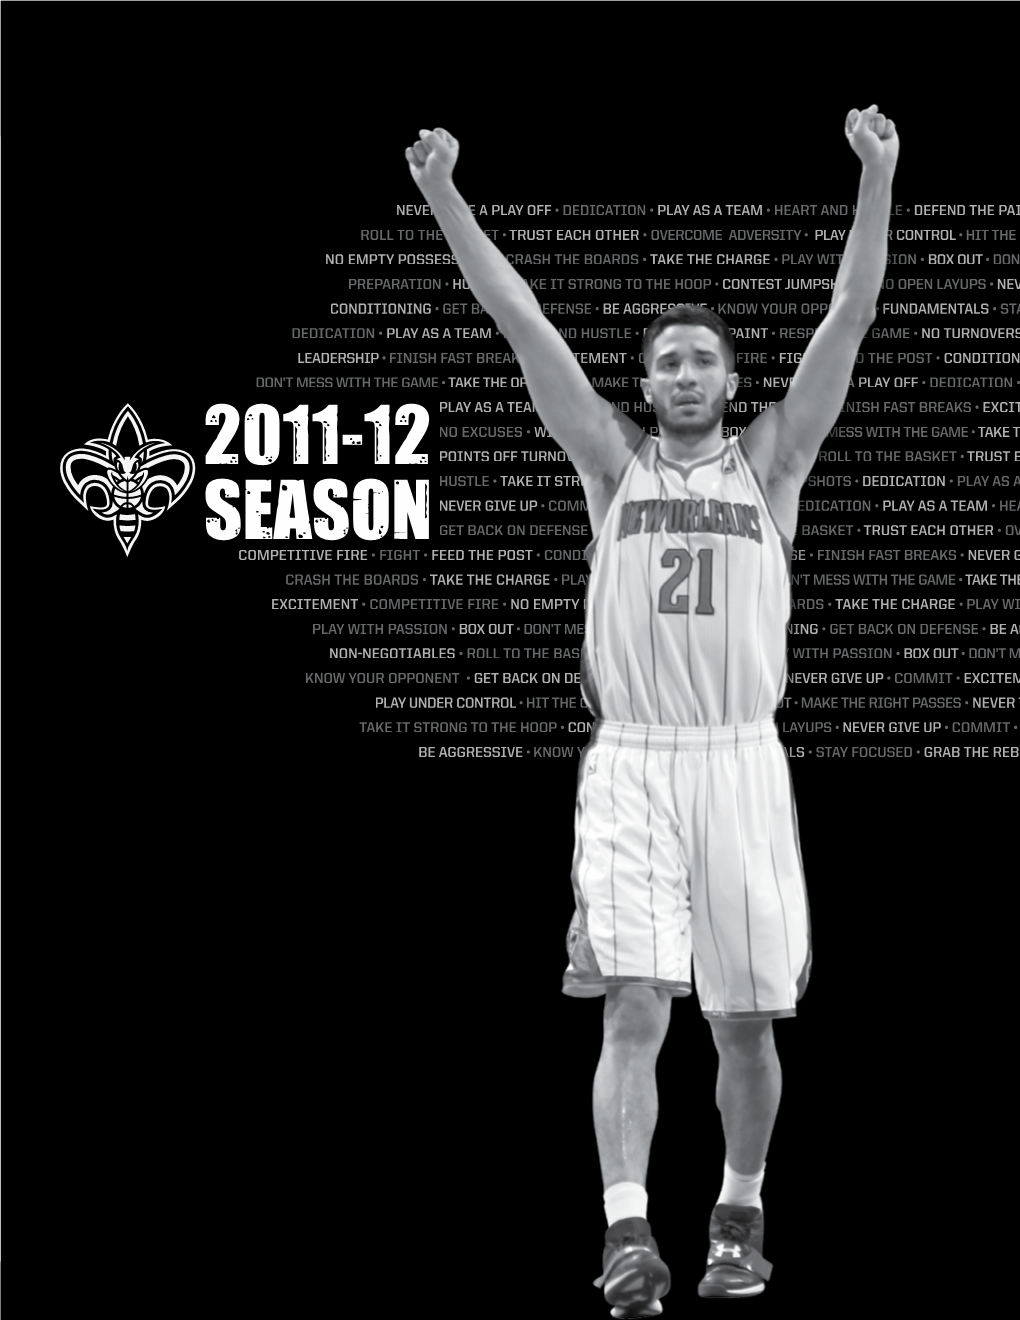 2011-12 Season 2011-12 Season